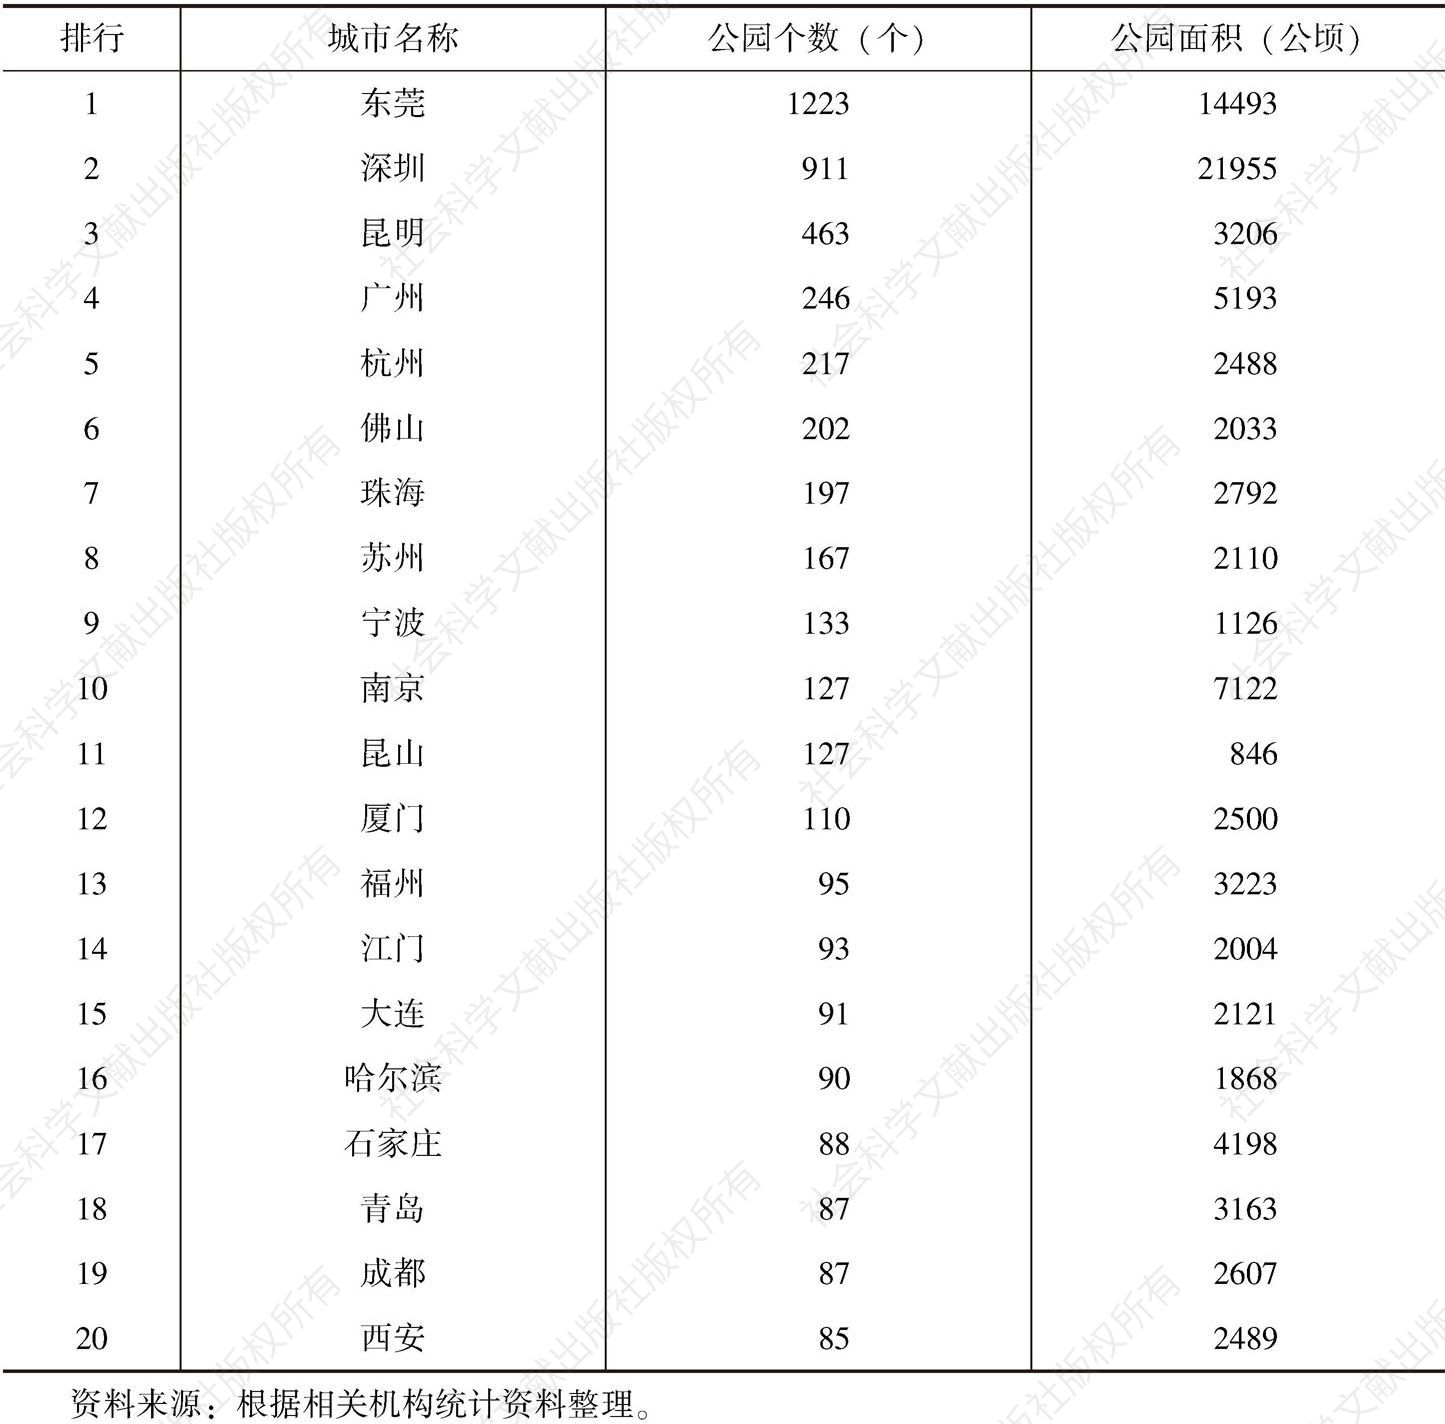 表2-12 中国主要城市公园数量排行榜TOP20